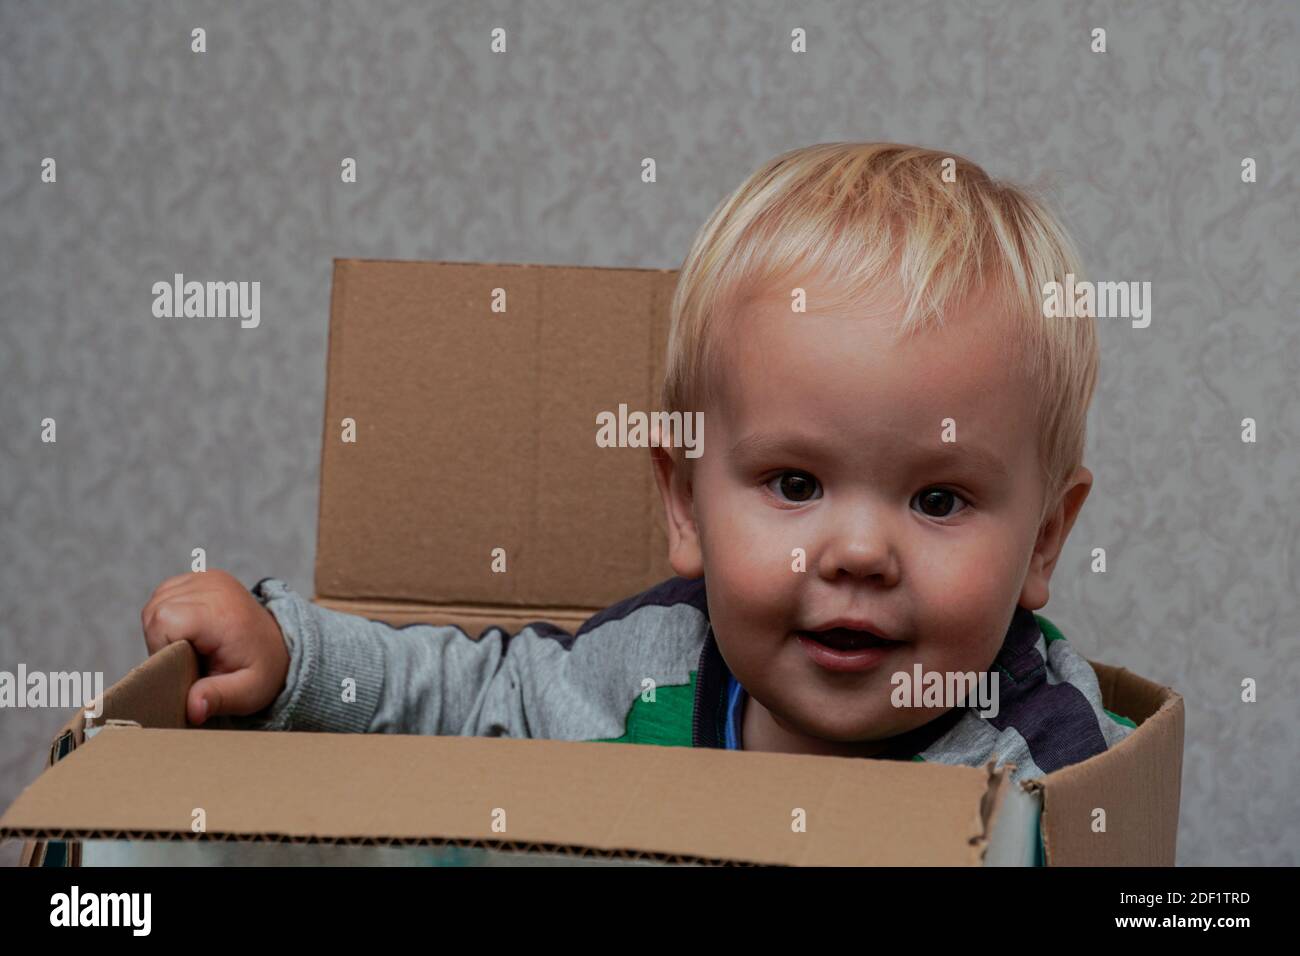 Kleiner Junge mit blonden Haaren sitzt in einer Box. Hohe Qualität Stockfoto